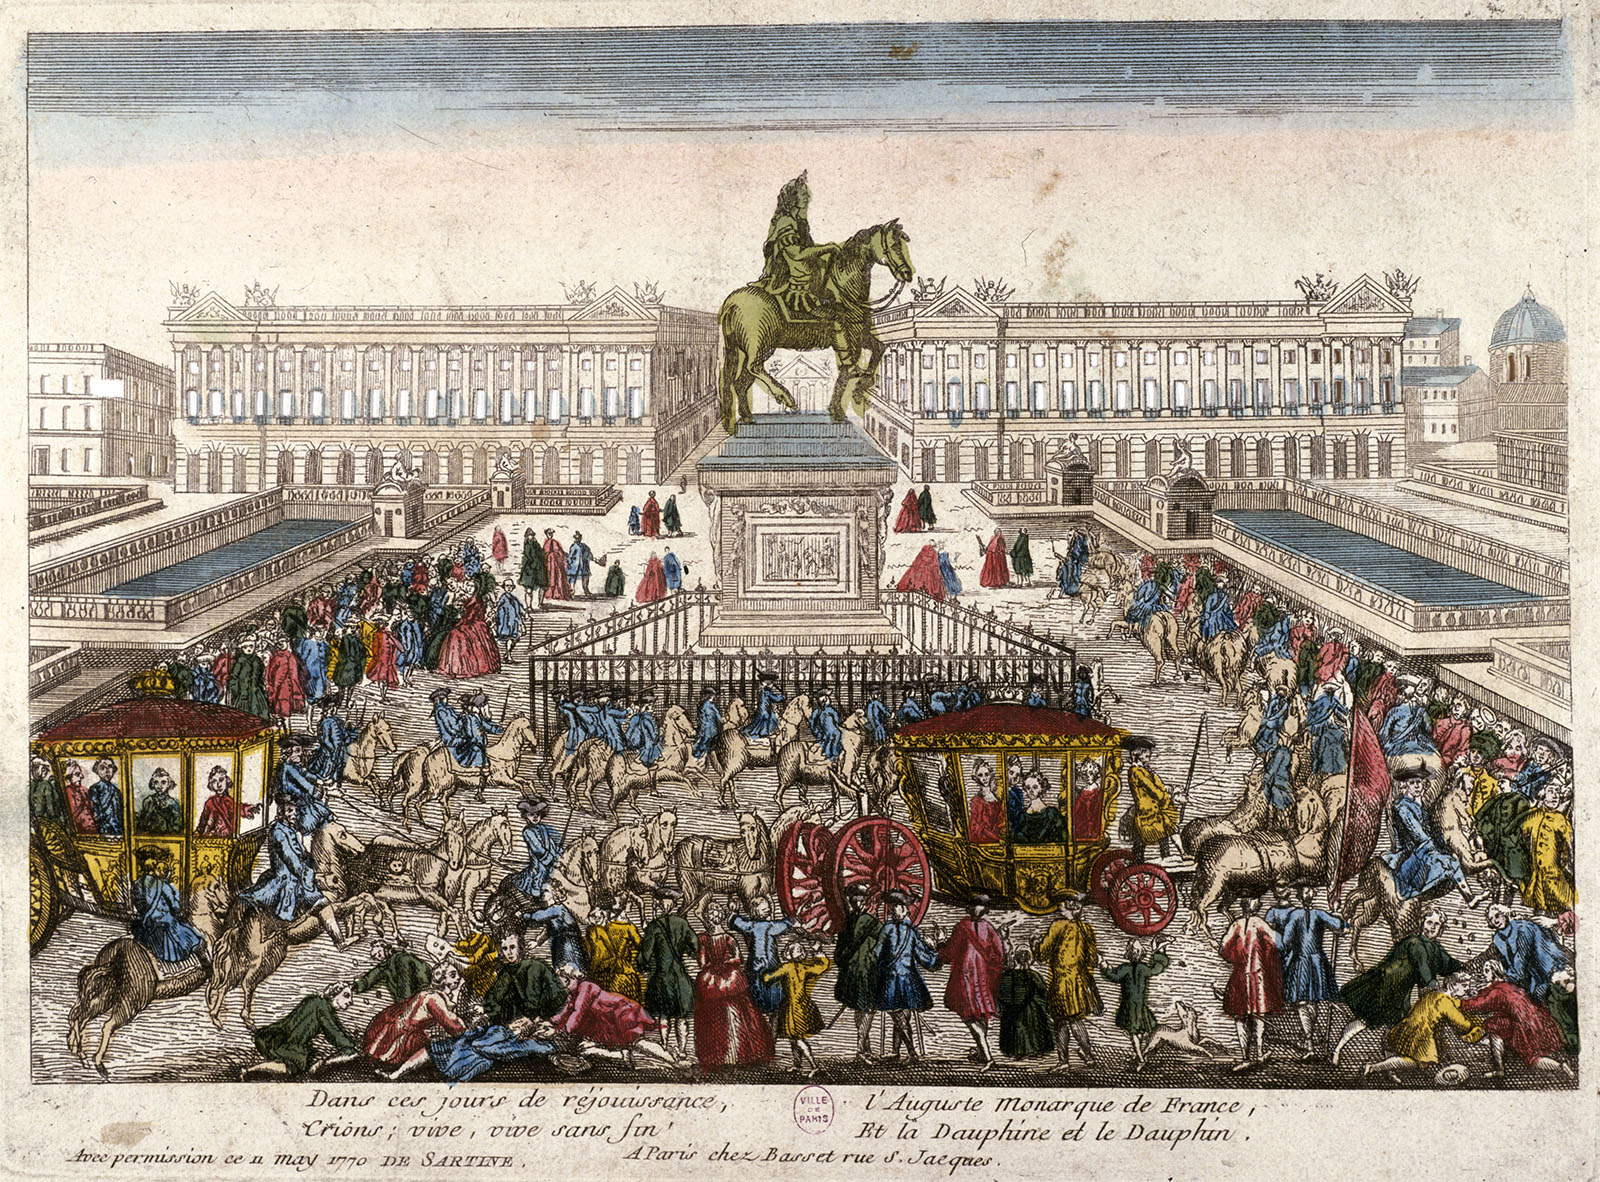 Place de la Concorde anciennement Place Louis XV